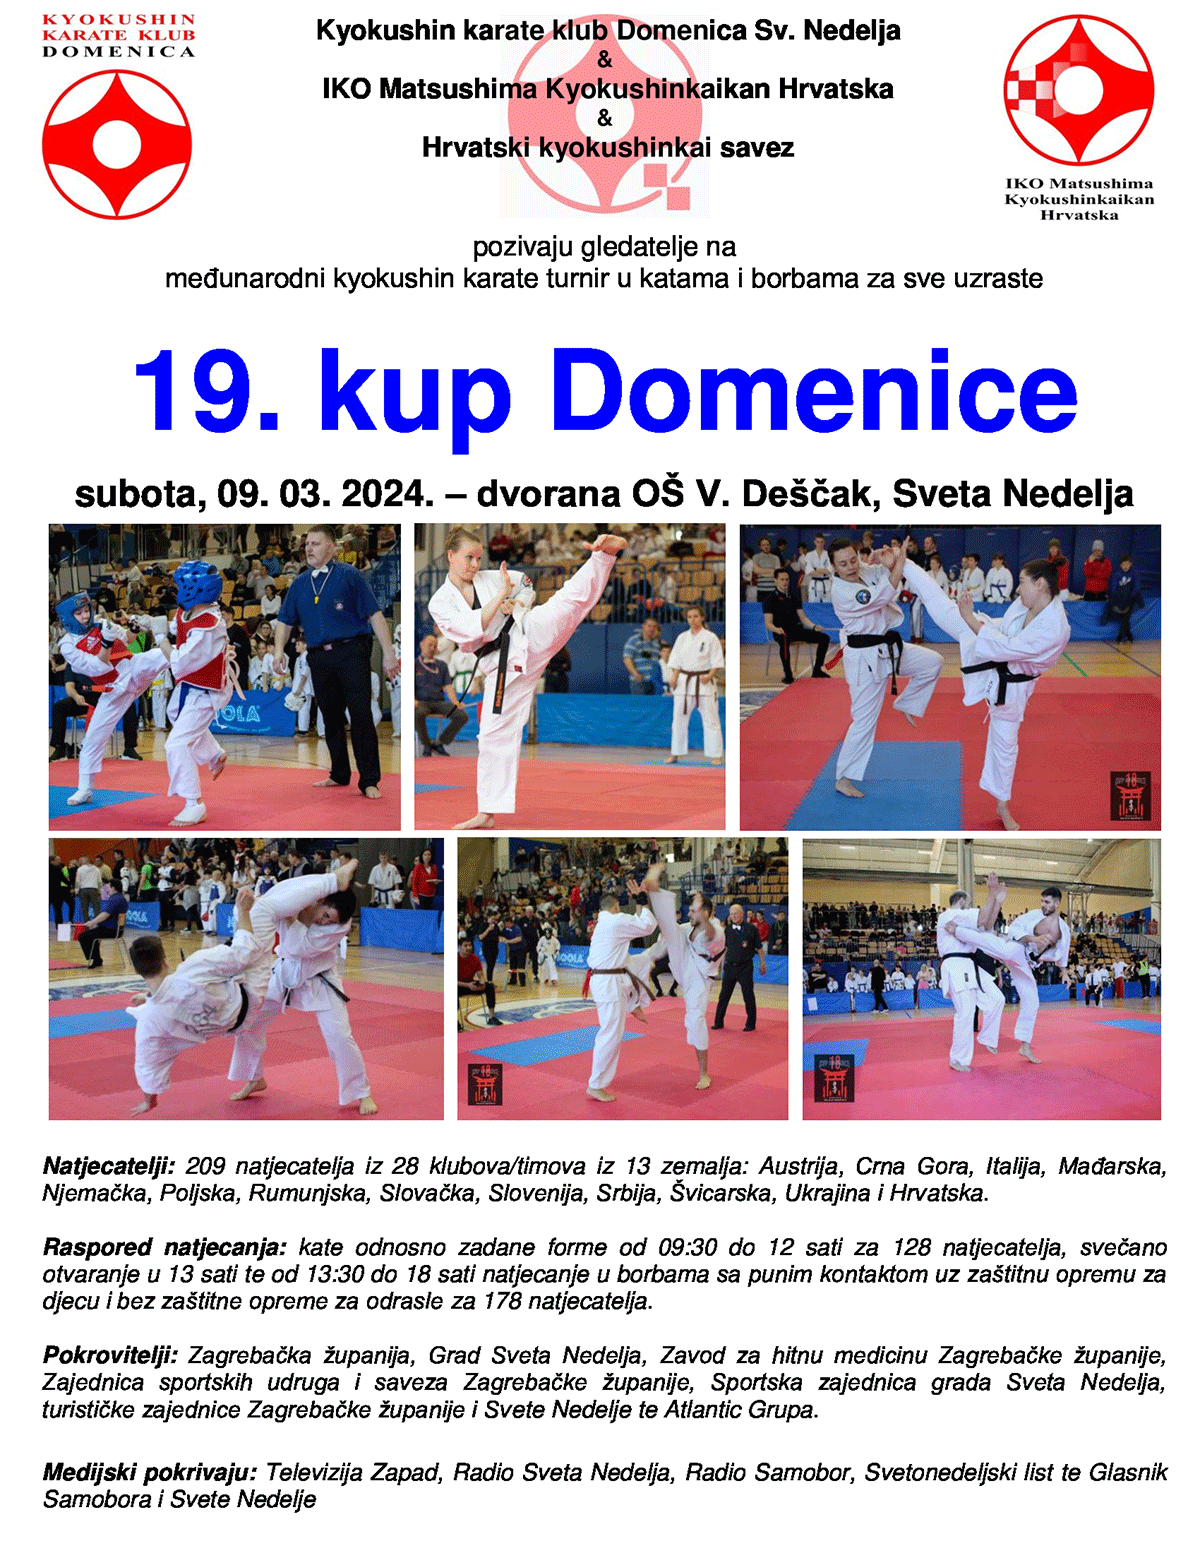 Kyokushin karate turnir u katama i borbama za sve uzraste - 09. oujka 